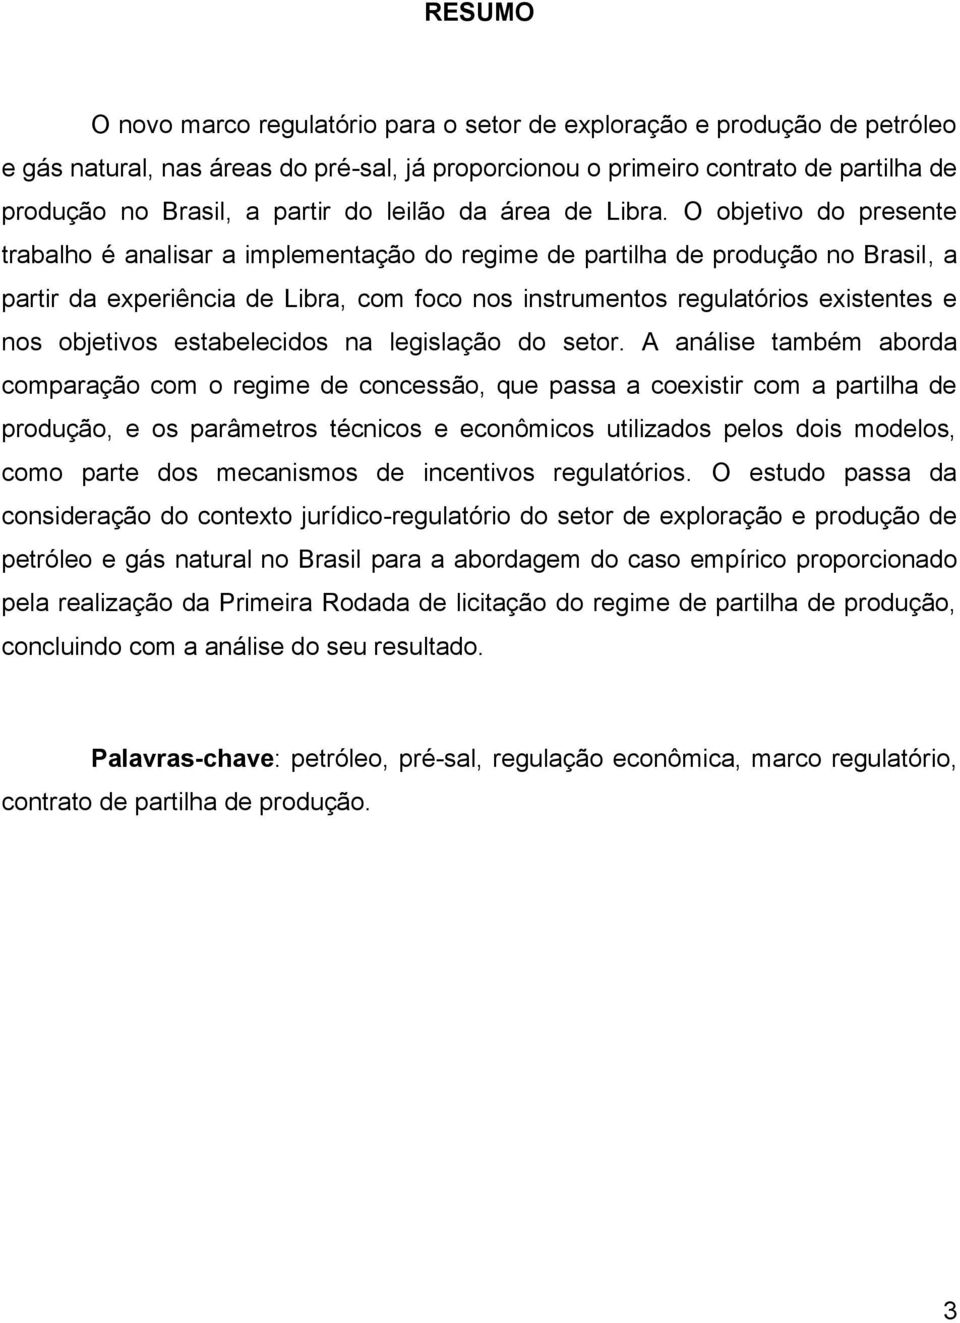 O objetivo do presente trabalho é analisar a implementação do regime de partilha de produção no Brasil, a partir da experiência de Libra, com foco nos instrumentos regulatórios existentes e nos